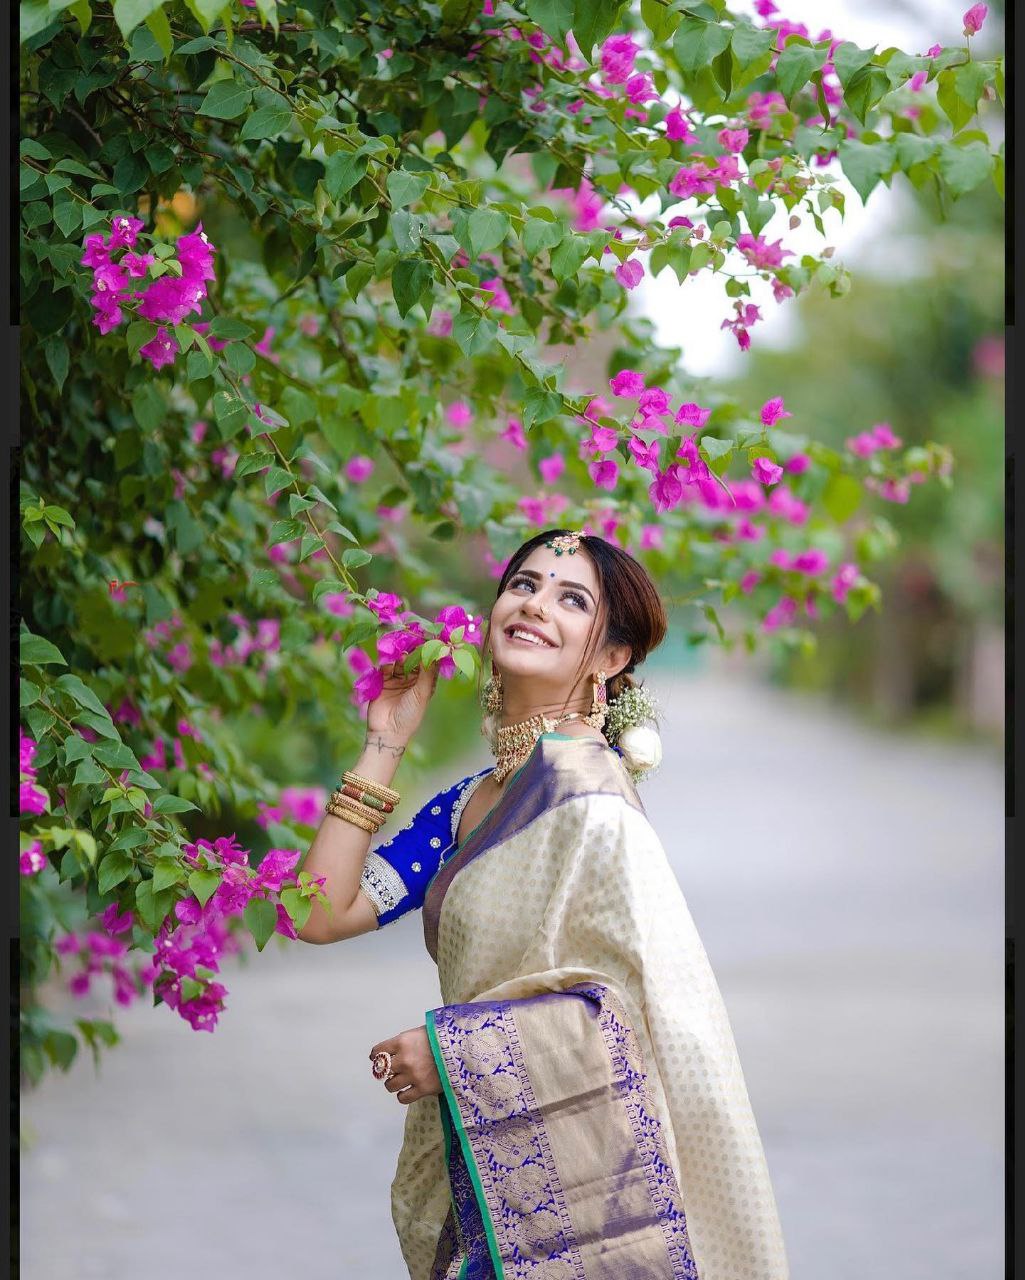 Golden Color Soft Banarasi Silk Saree With Royal Blue Blouse